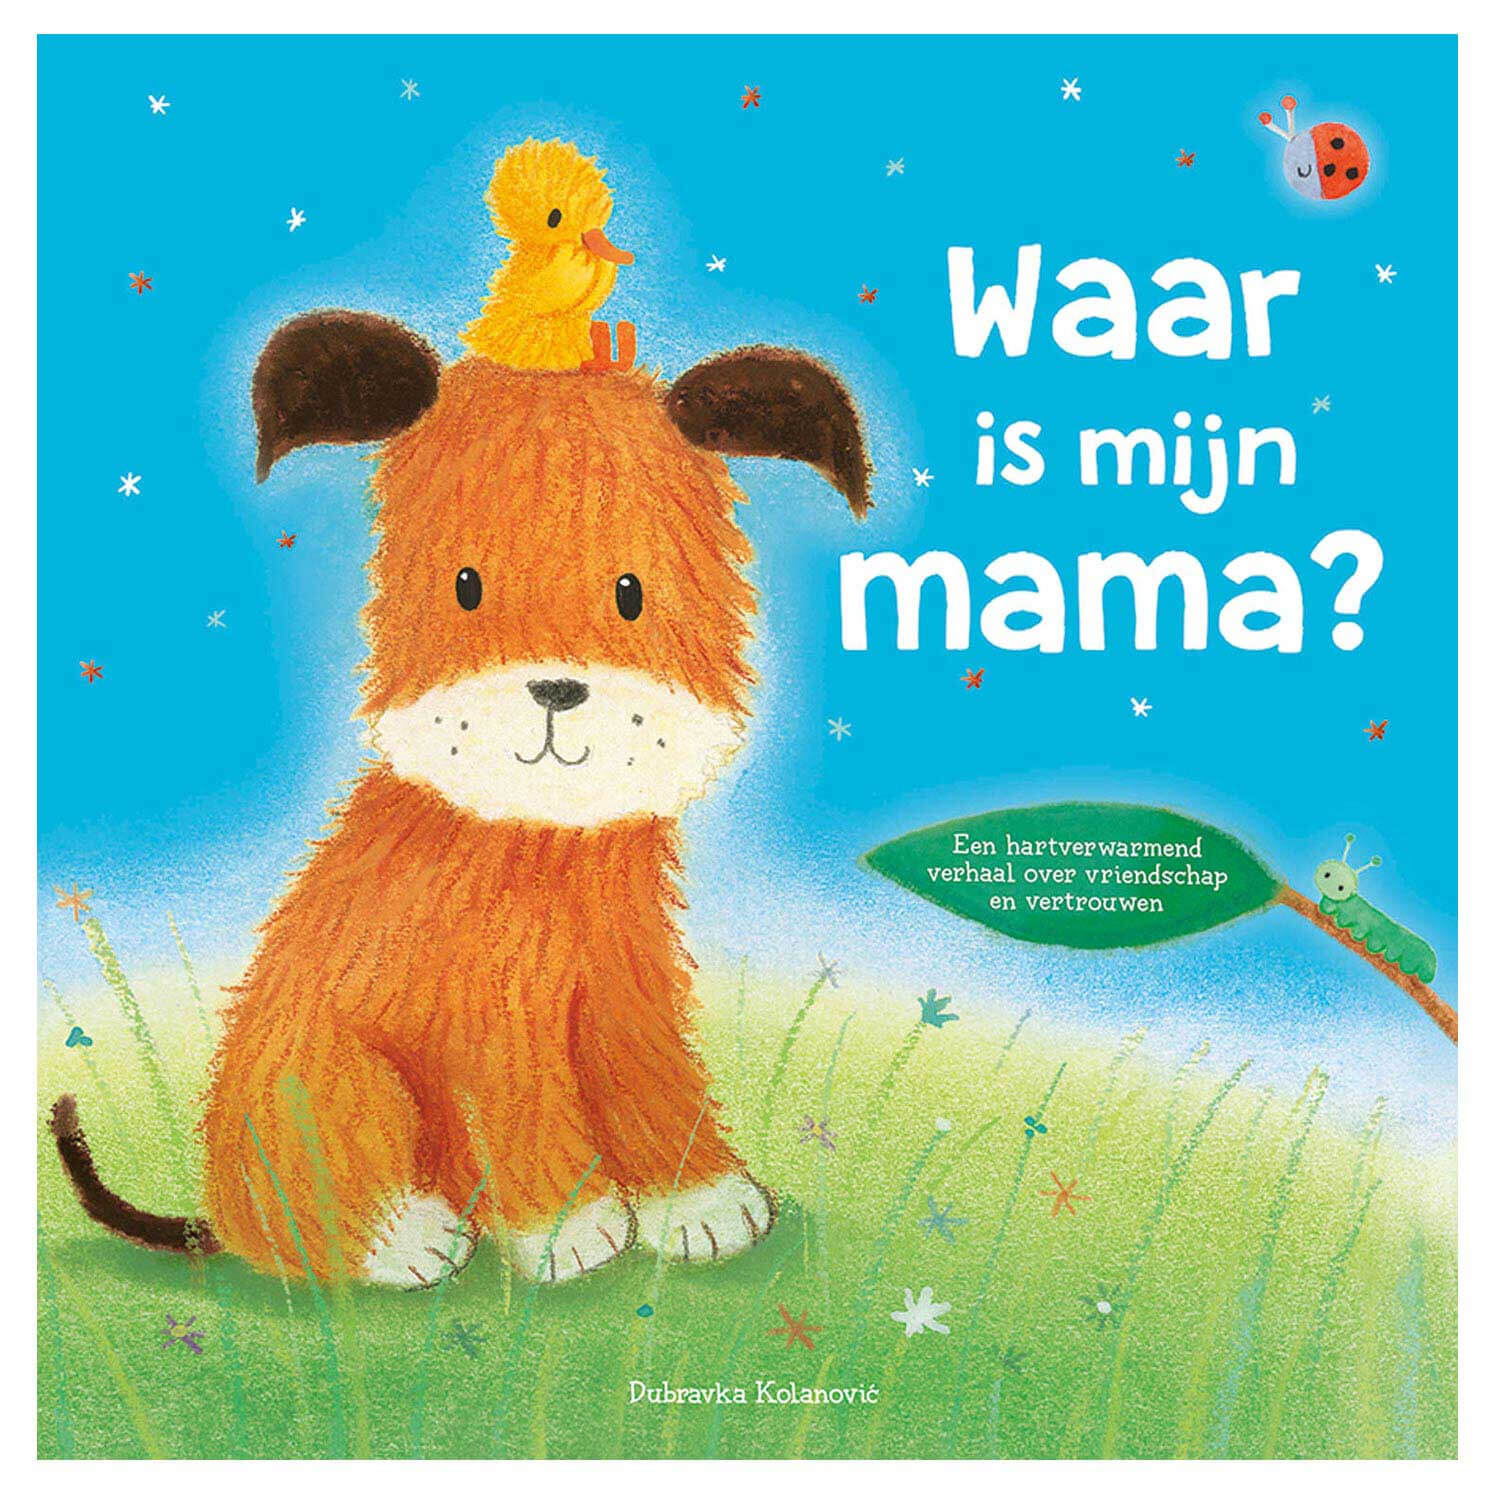 prentenboek waar is mijn mama lente rebo cover voorkant boek hondje met eendje